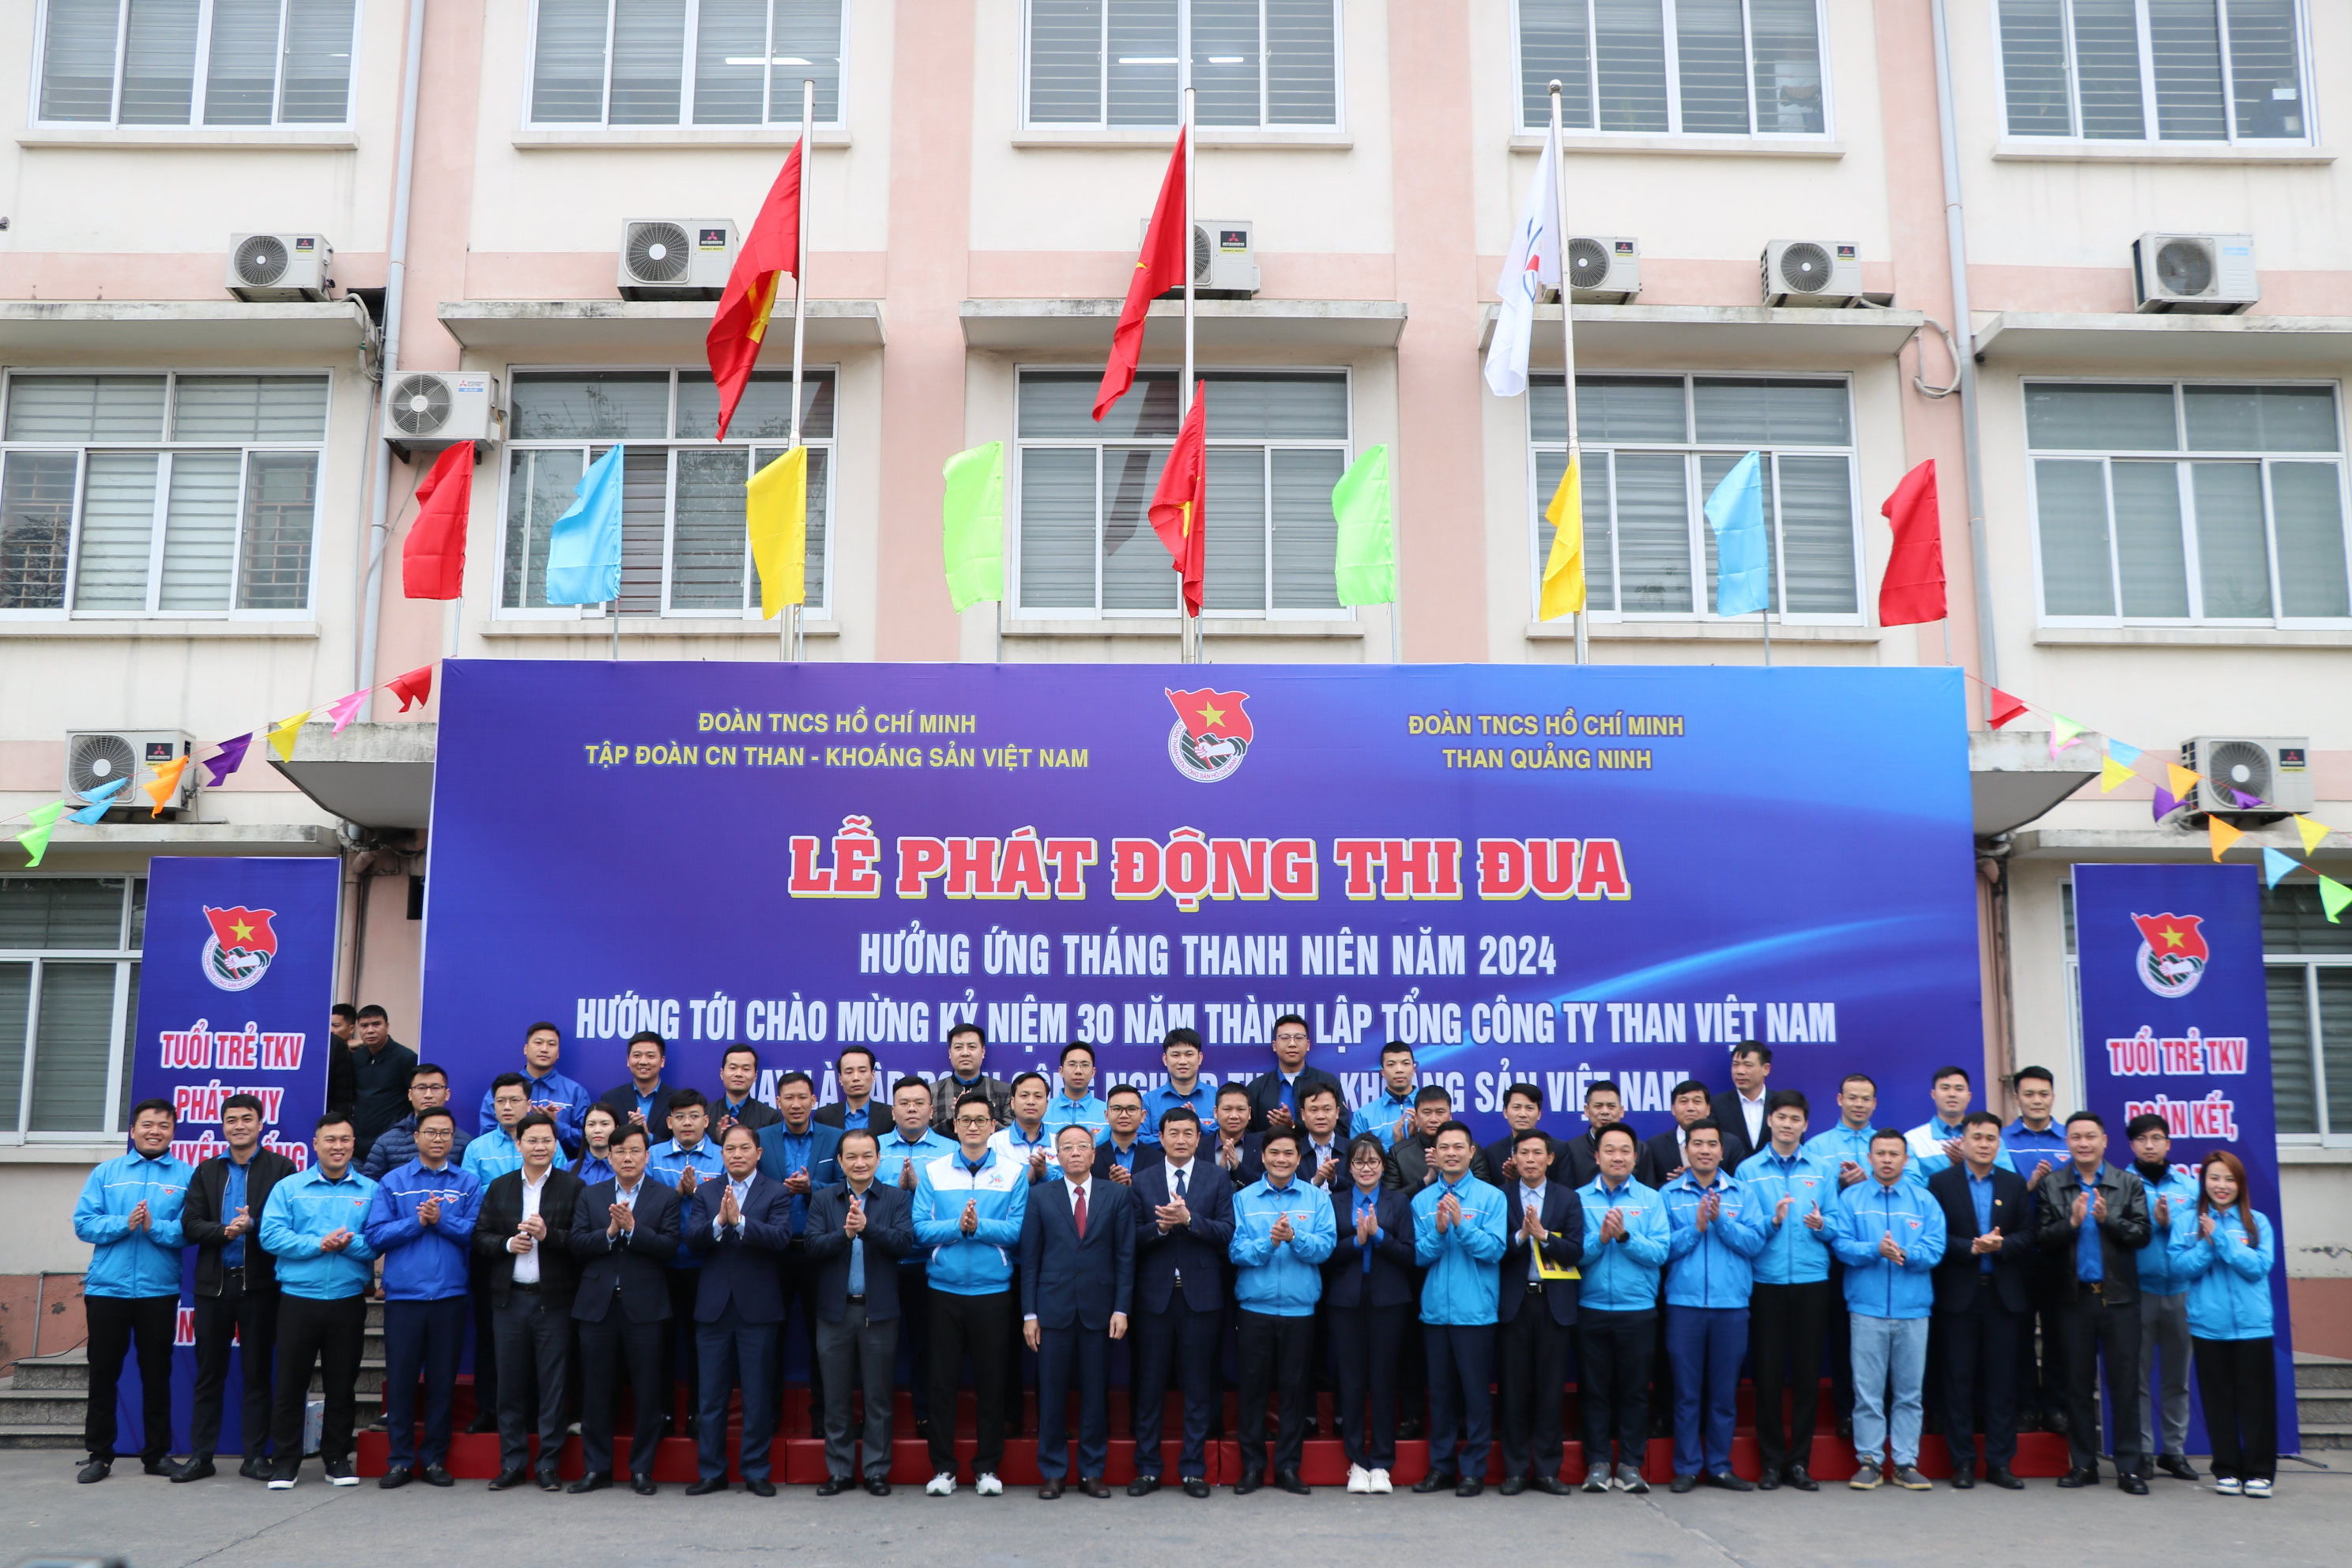 Đoàn thanh niên Công ty tham gia phát động thi đua hưởng ứng Tháng Thanh niên năm 2024, hướng tới chào mừng kỷ niệm 30 năm thành lập Tổng Công ty Than Việt Nam - Ảnh 9